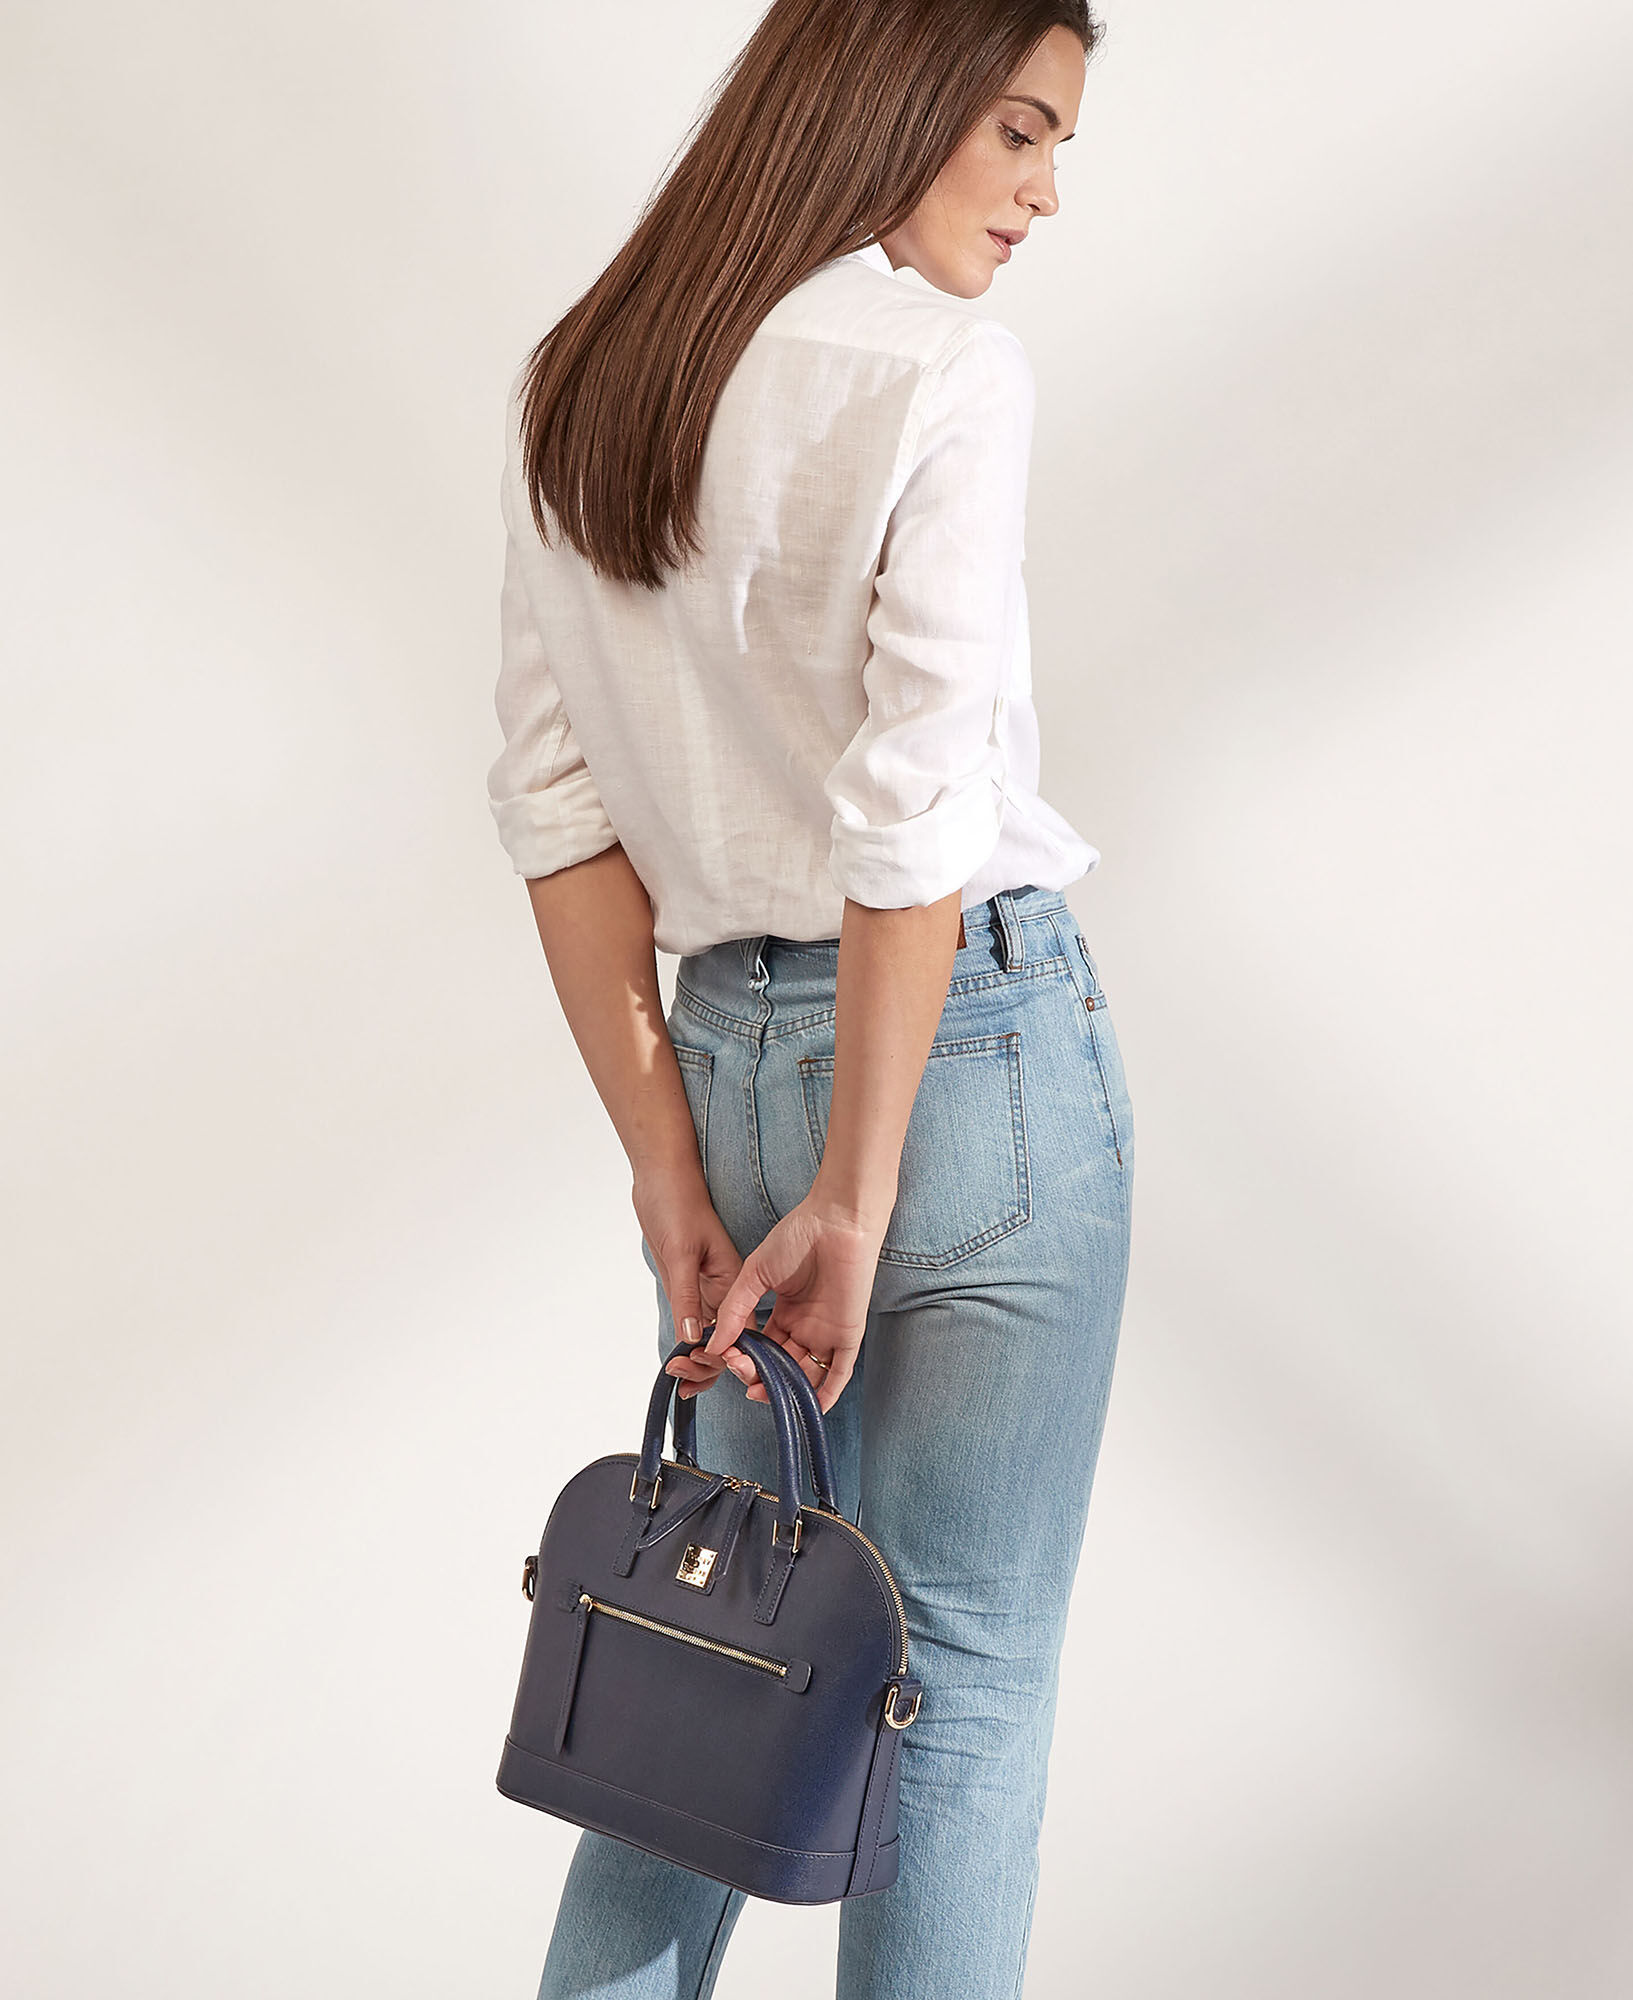 Dooney & Bourke Handbag, Saffiano Domed Zip Satchel - Amber : Clothing,  Shoes & Jewelry 